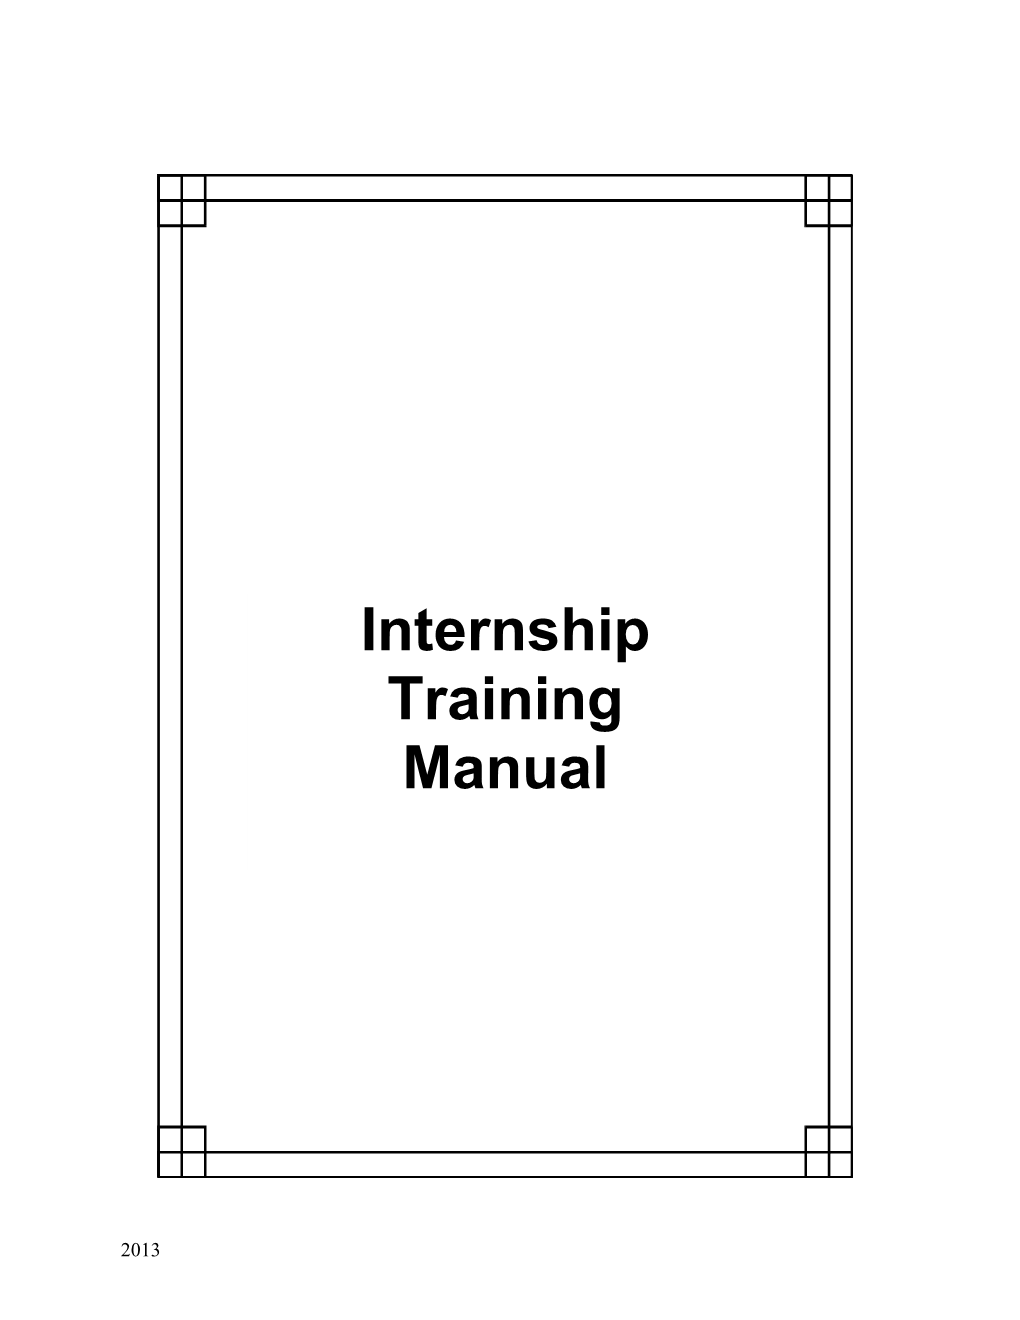 Internship Program Manual